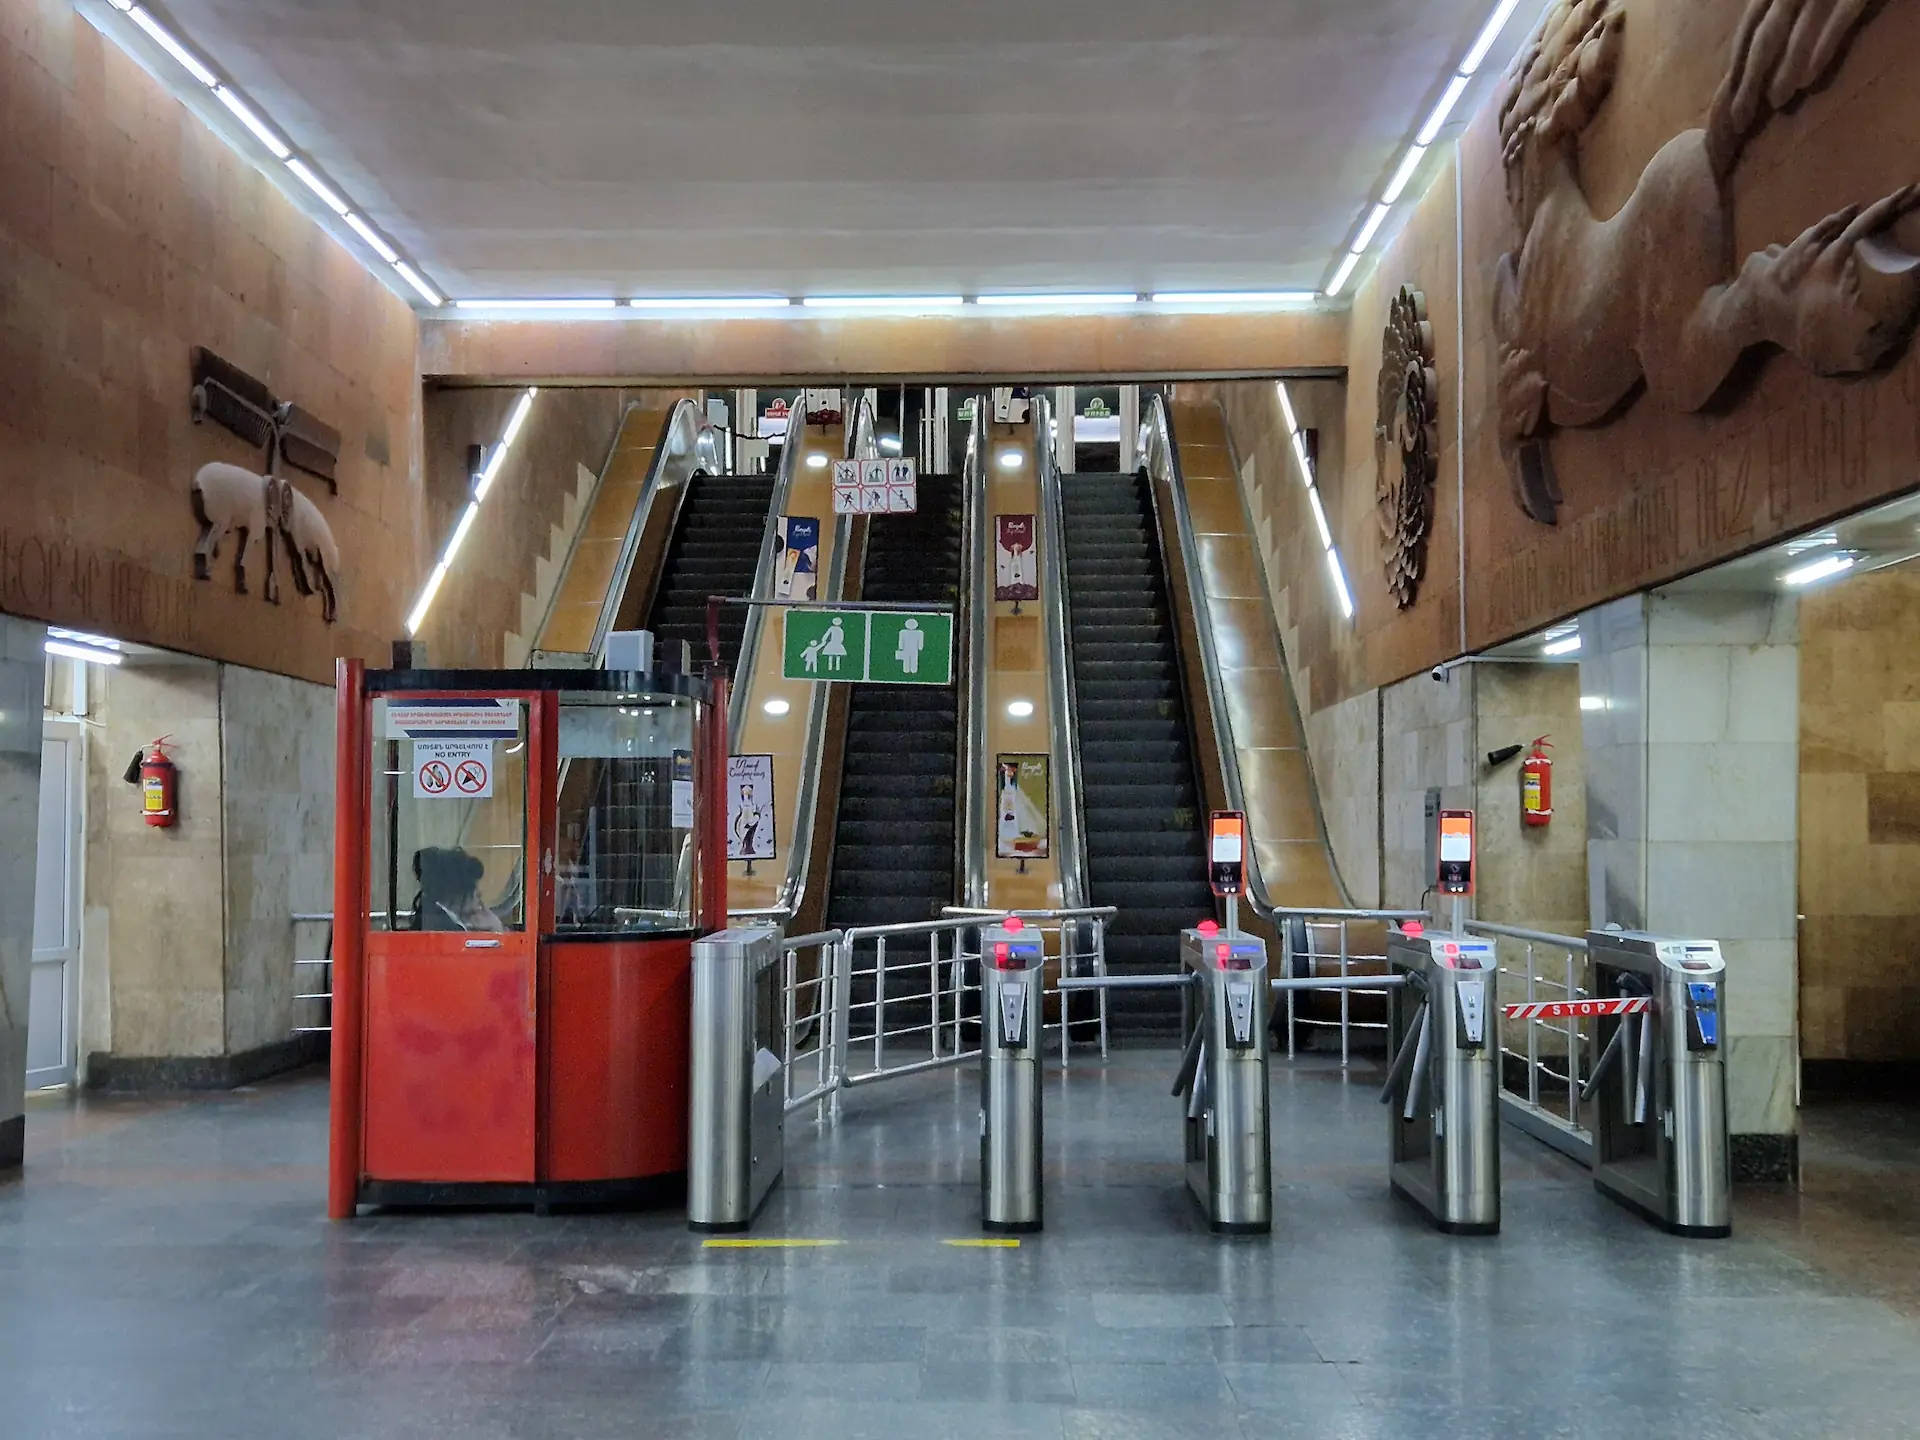 Entrée de la station de la gare. Il y a des fresques soviétiques sur les murs. Devant nous, une cabine rouge où se trouve une employée, trois tourniquets qui mènent à des escaliers roulants.